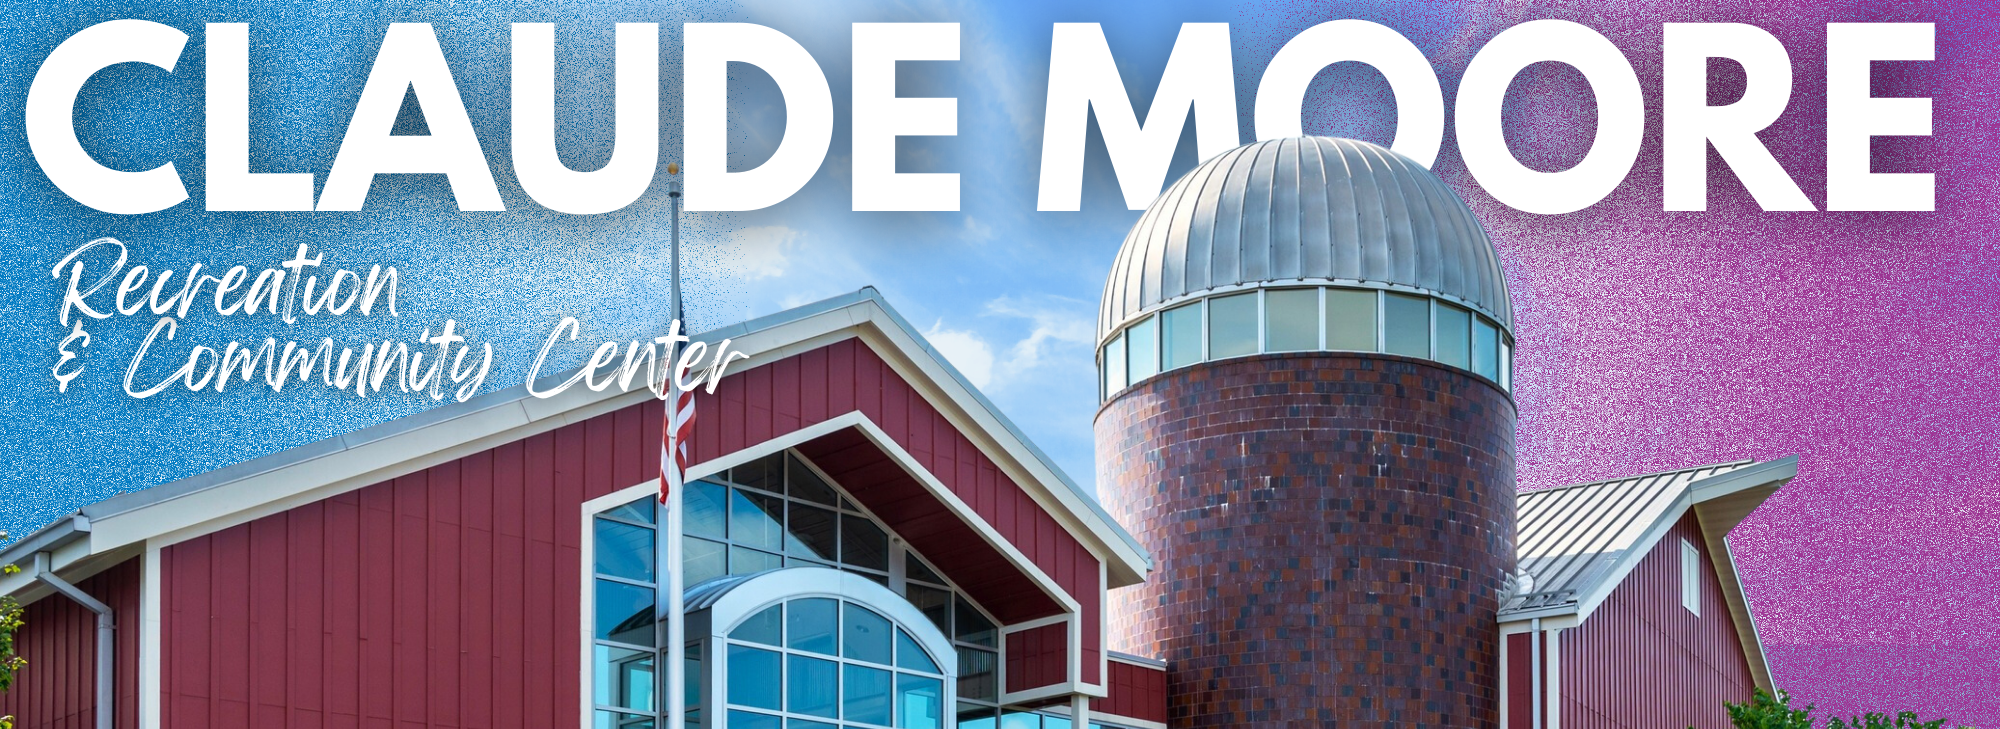 Claude Moore Recreation & Community Center